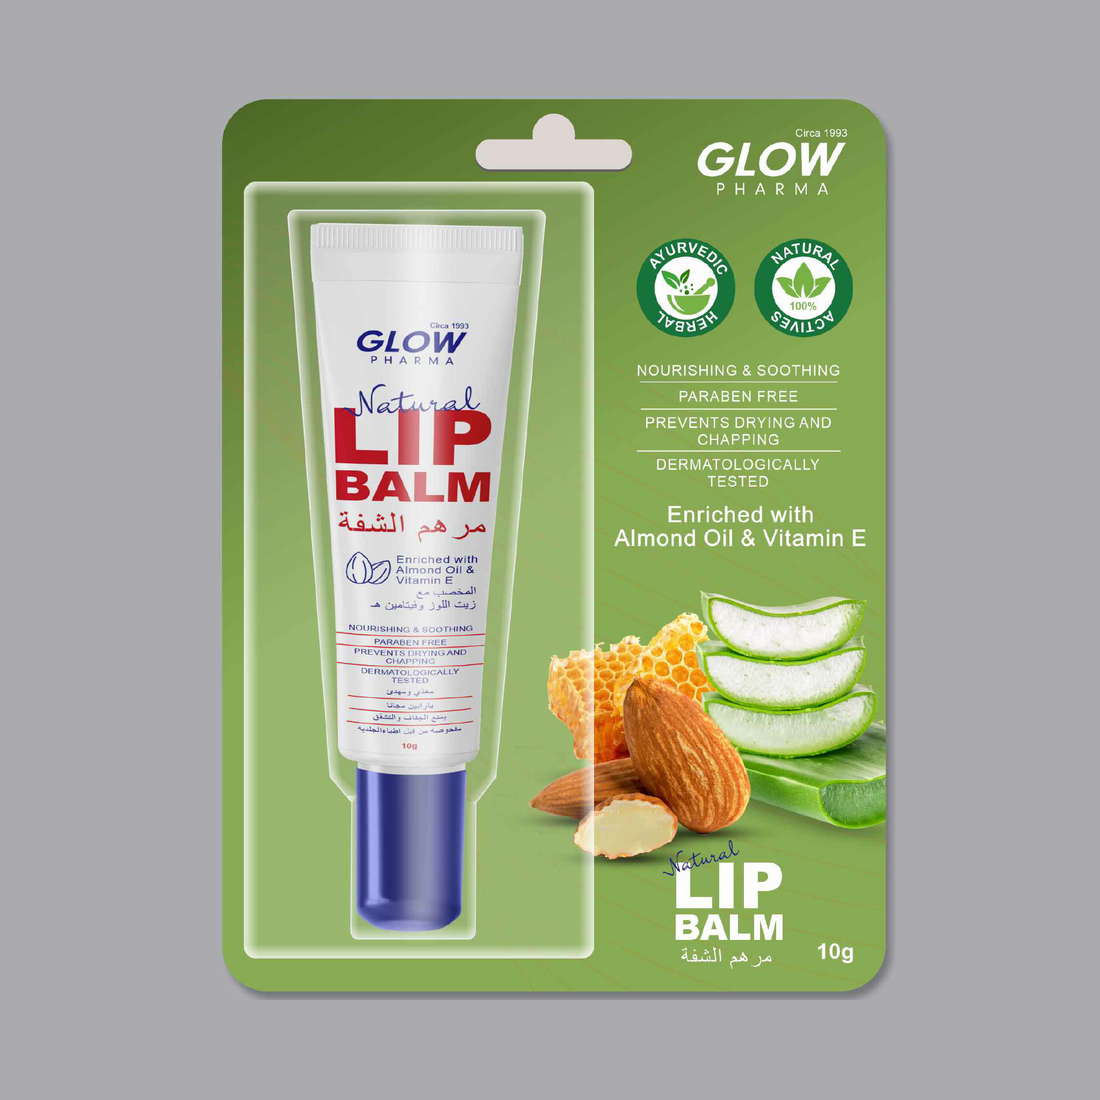 Glow Pharma Caring Lip Balm